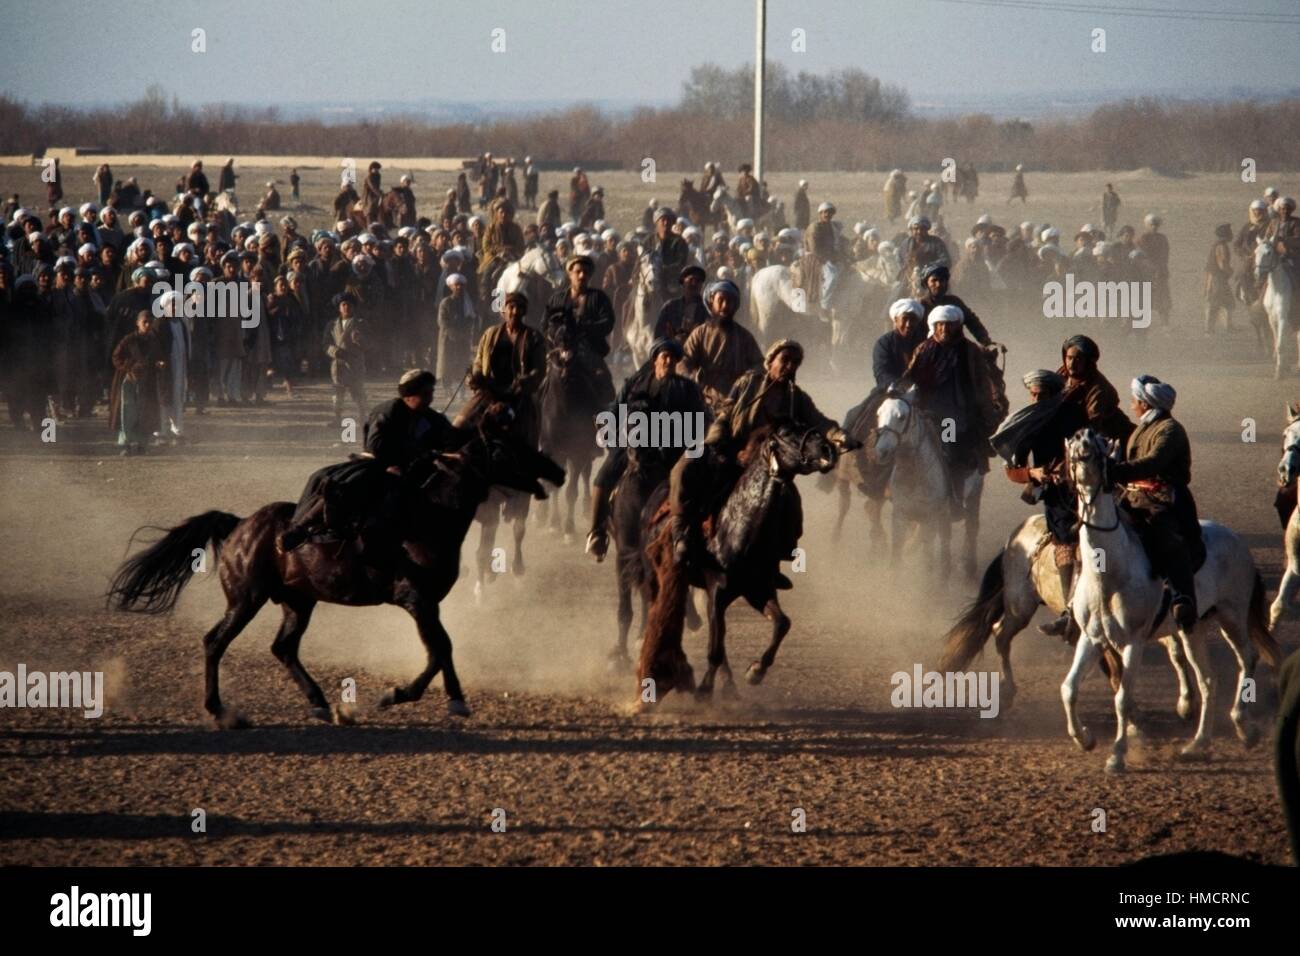 Buzkashi, afghanischer Nationalsport, zwei Teams von Reitern Versuch, eine Ziege oder Kalb Karkasse auf ein Ziel, Afghanistan zu ziehen. Stockfoto